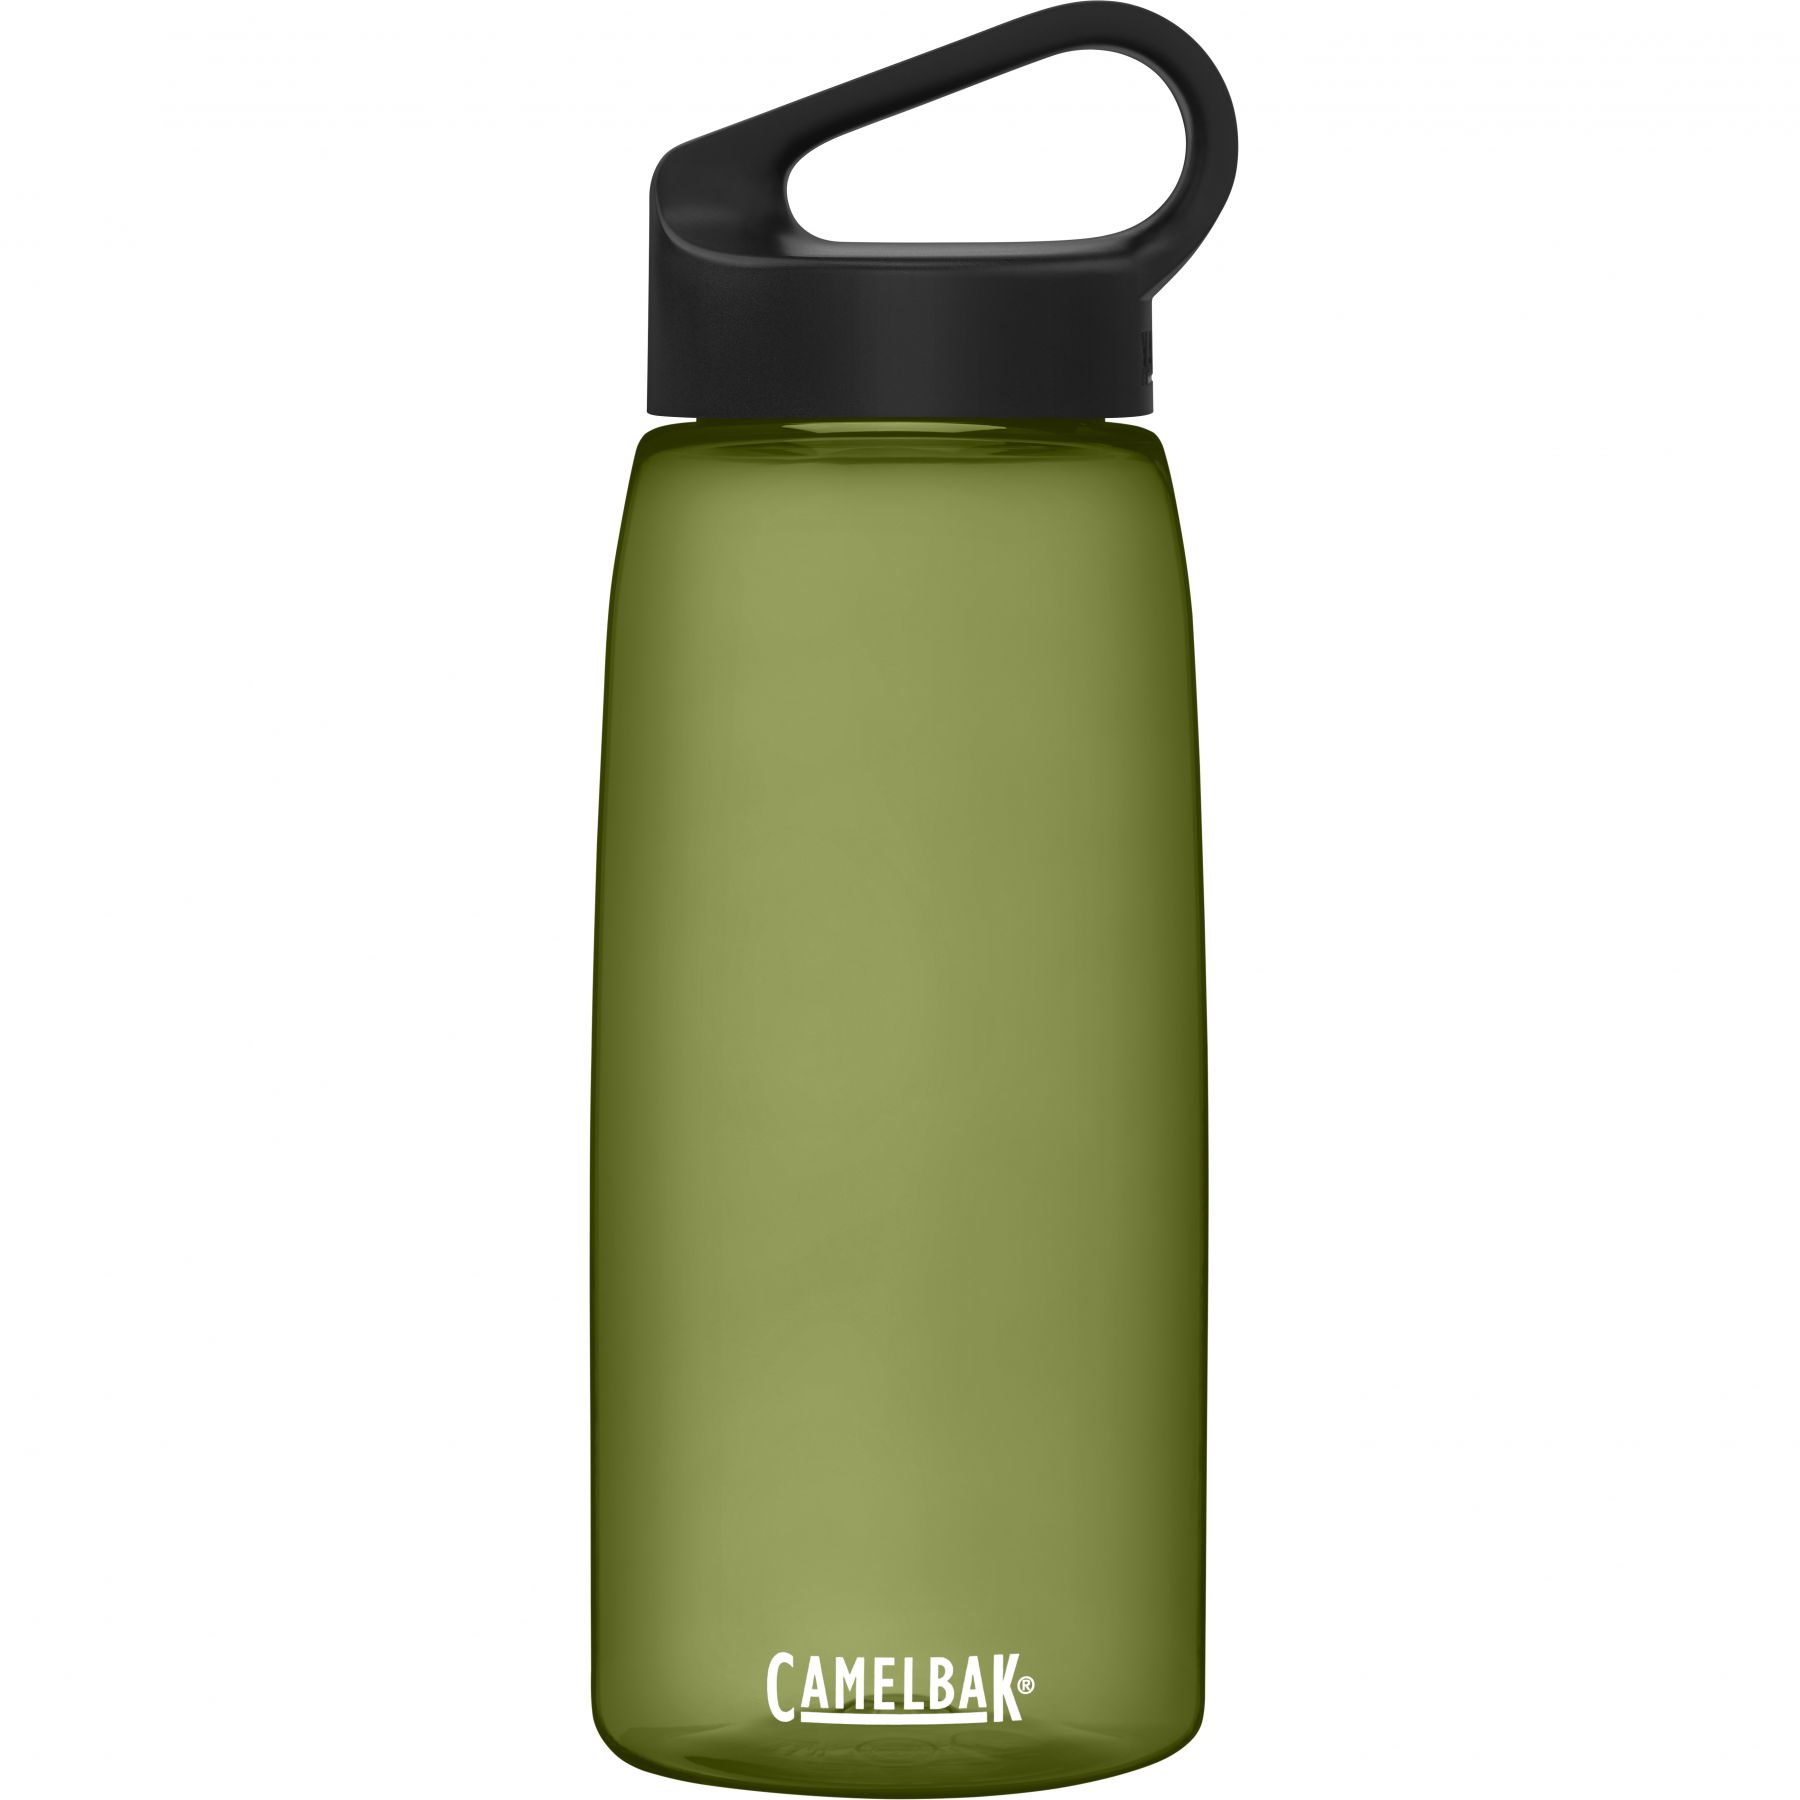 Se CamelBak - Carry Cap vandflaske 1L (Grøn) hos Skisport.dk